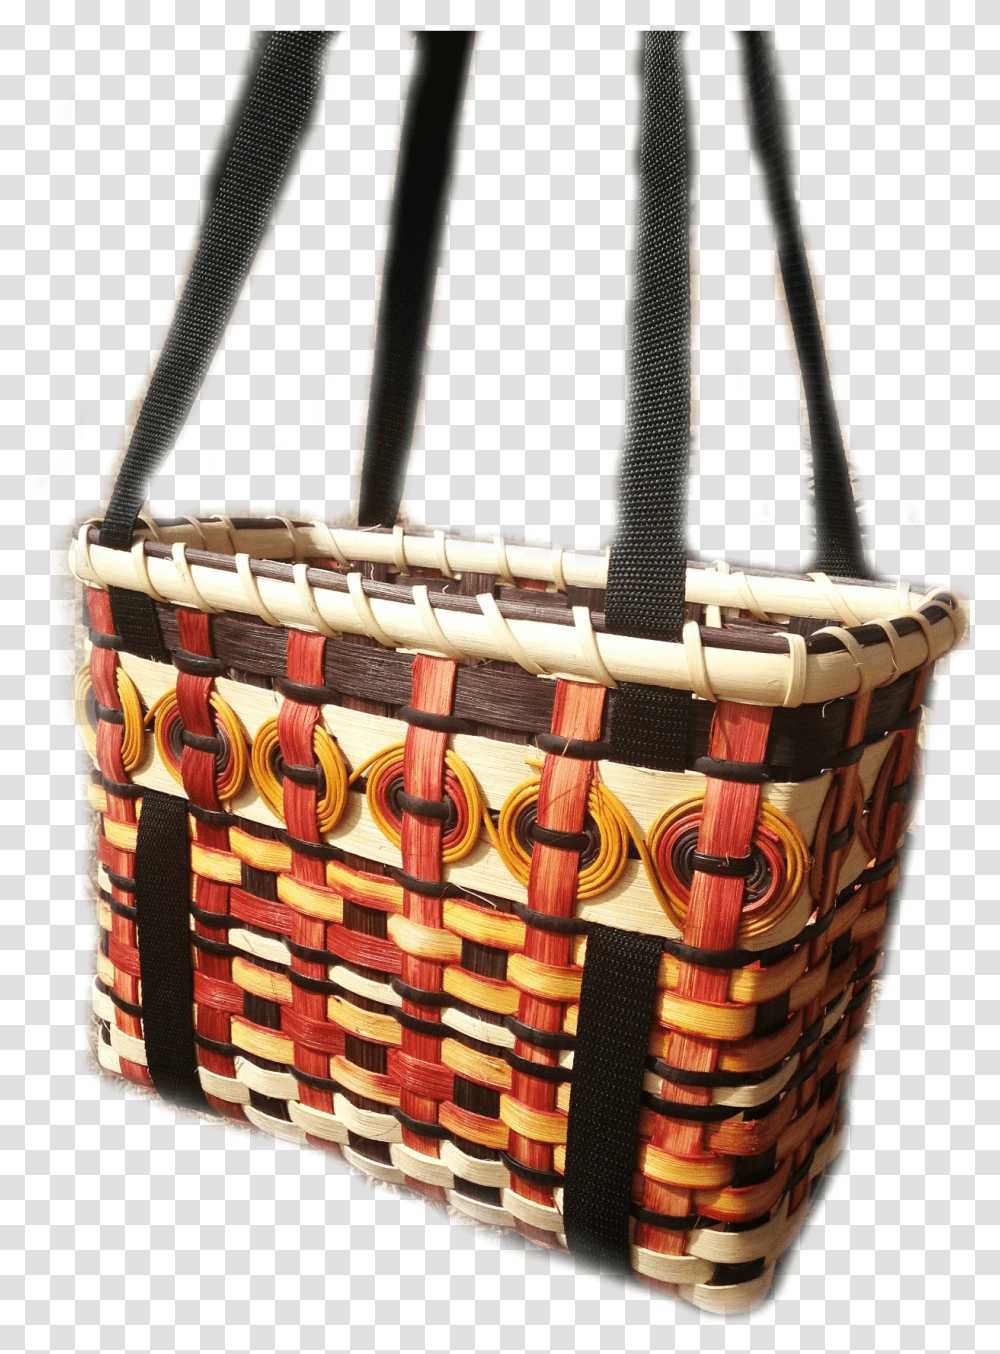 Black Eyed Susan Tote Shoulder Bag, Basket, Handbag, Accessories, Accessory Transparent Png